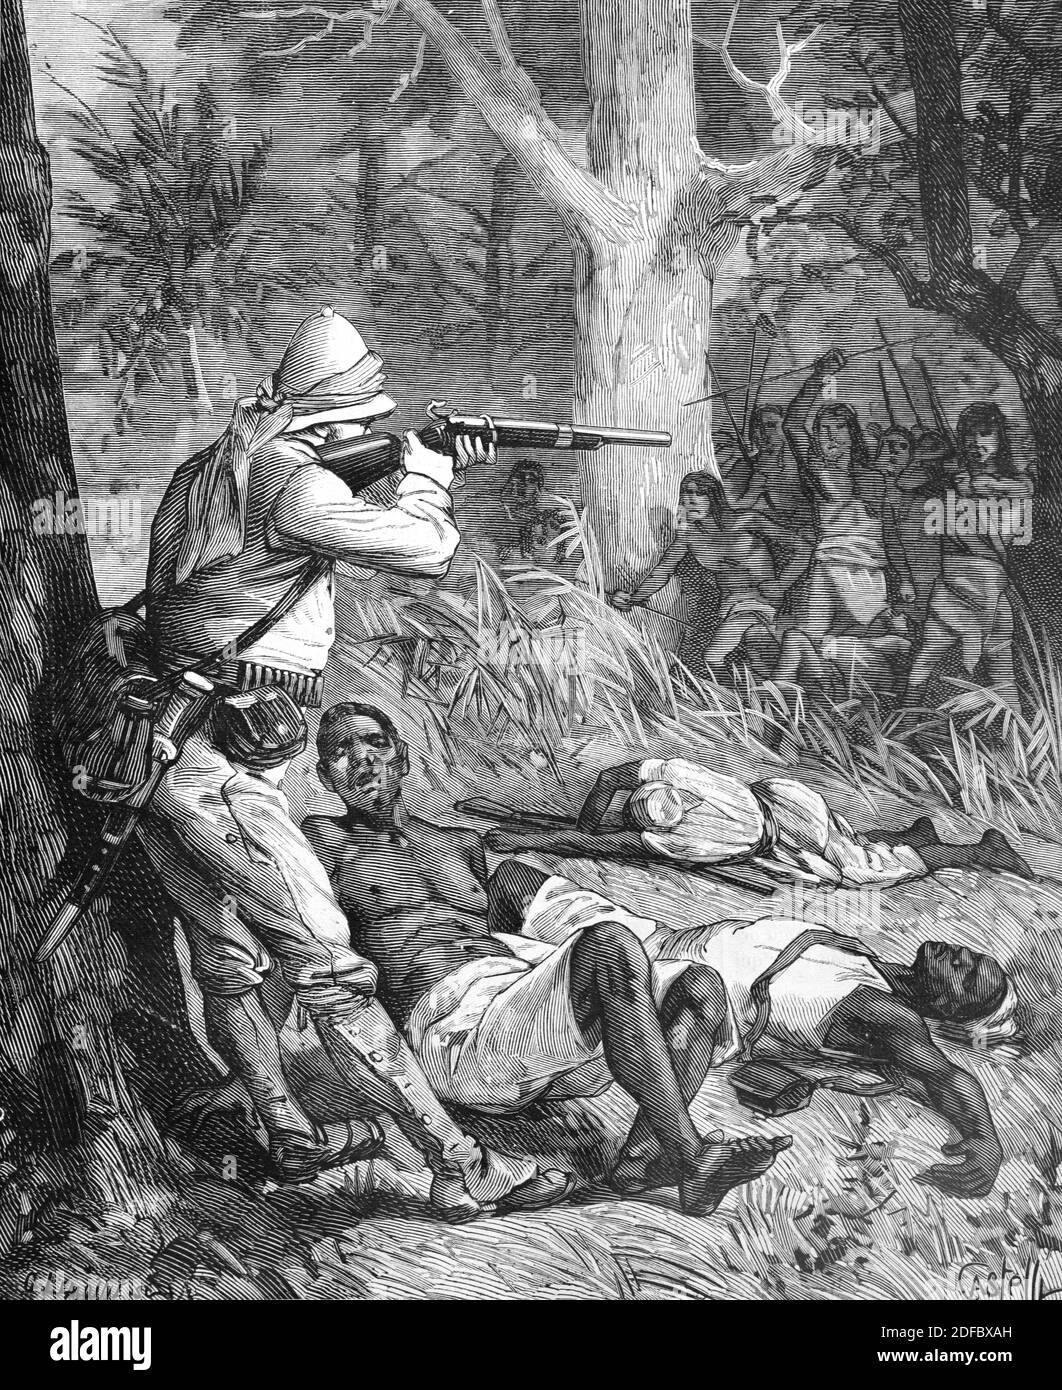 Enfrentamiento en el África colonial entre europeos coloniales y africanos OR Tribu Africana (Engr Castelli 1884) Ilustración o Grabado de la Vintage Foto de stock